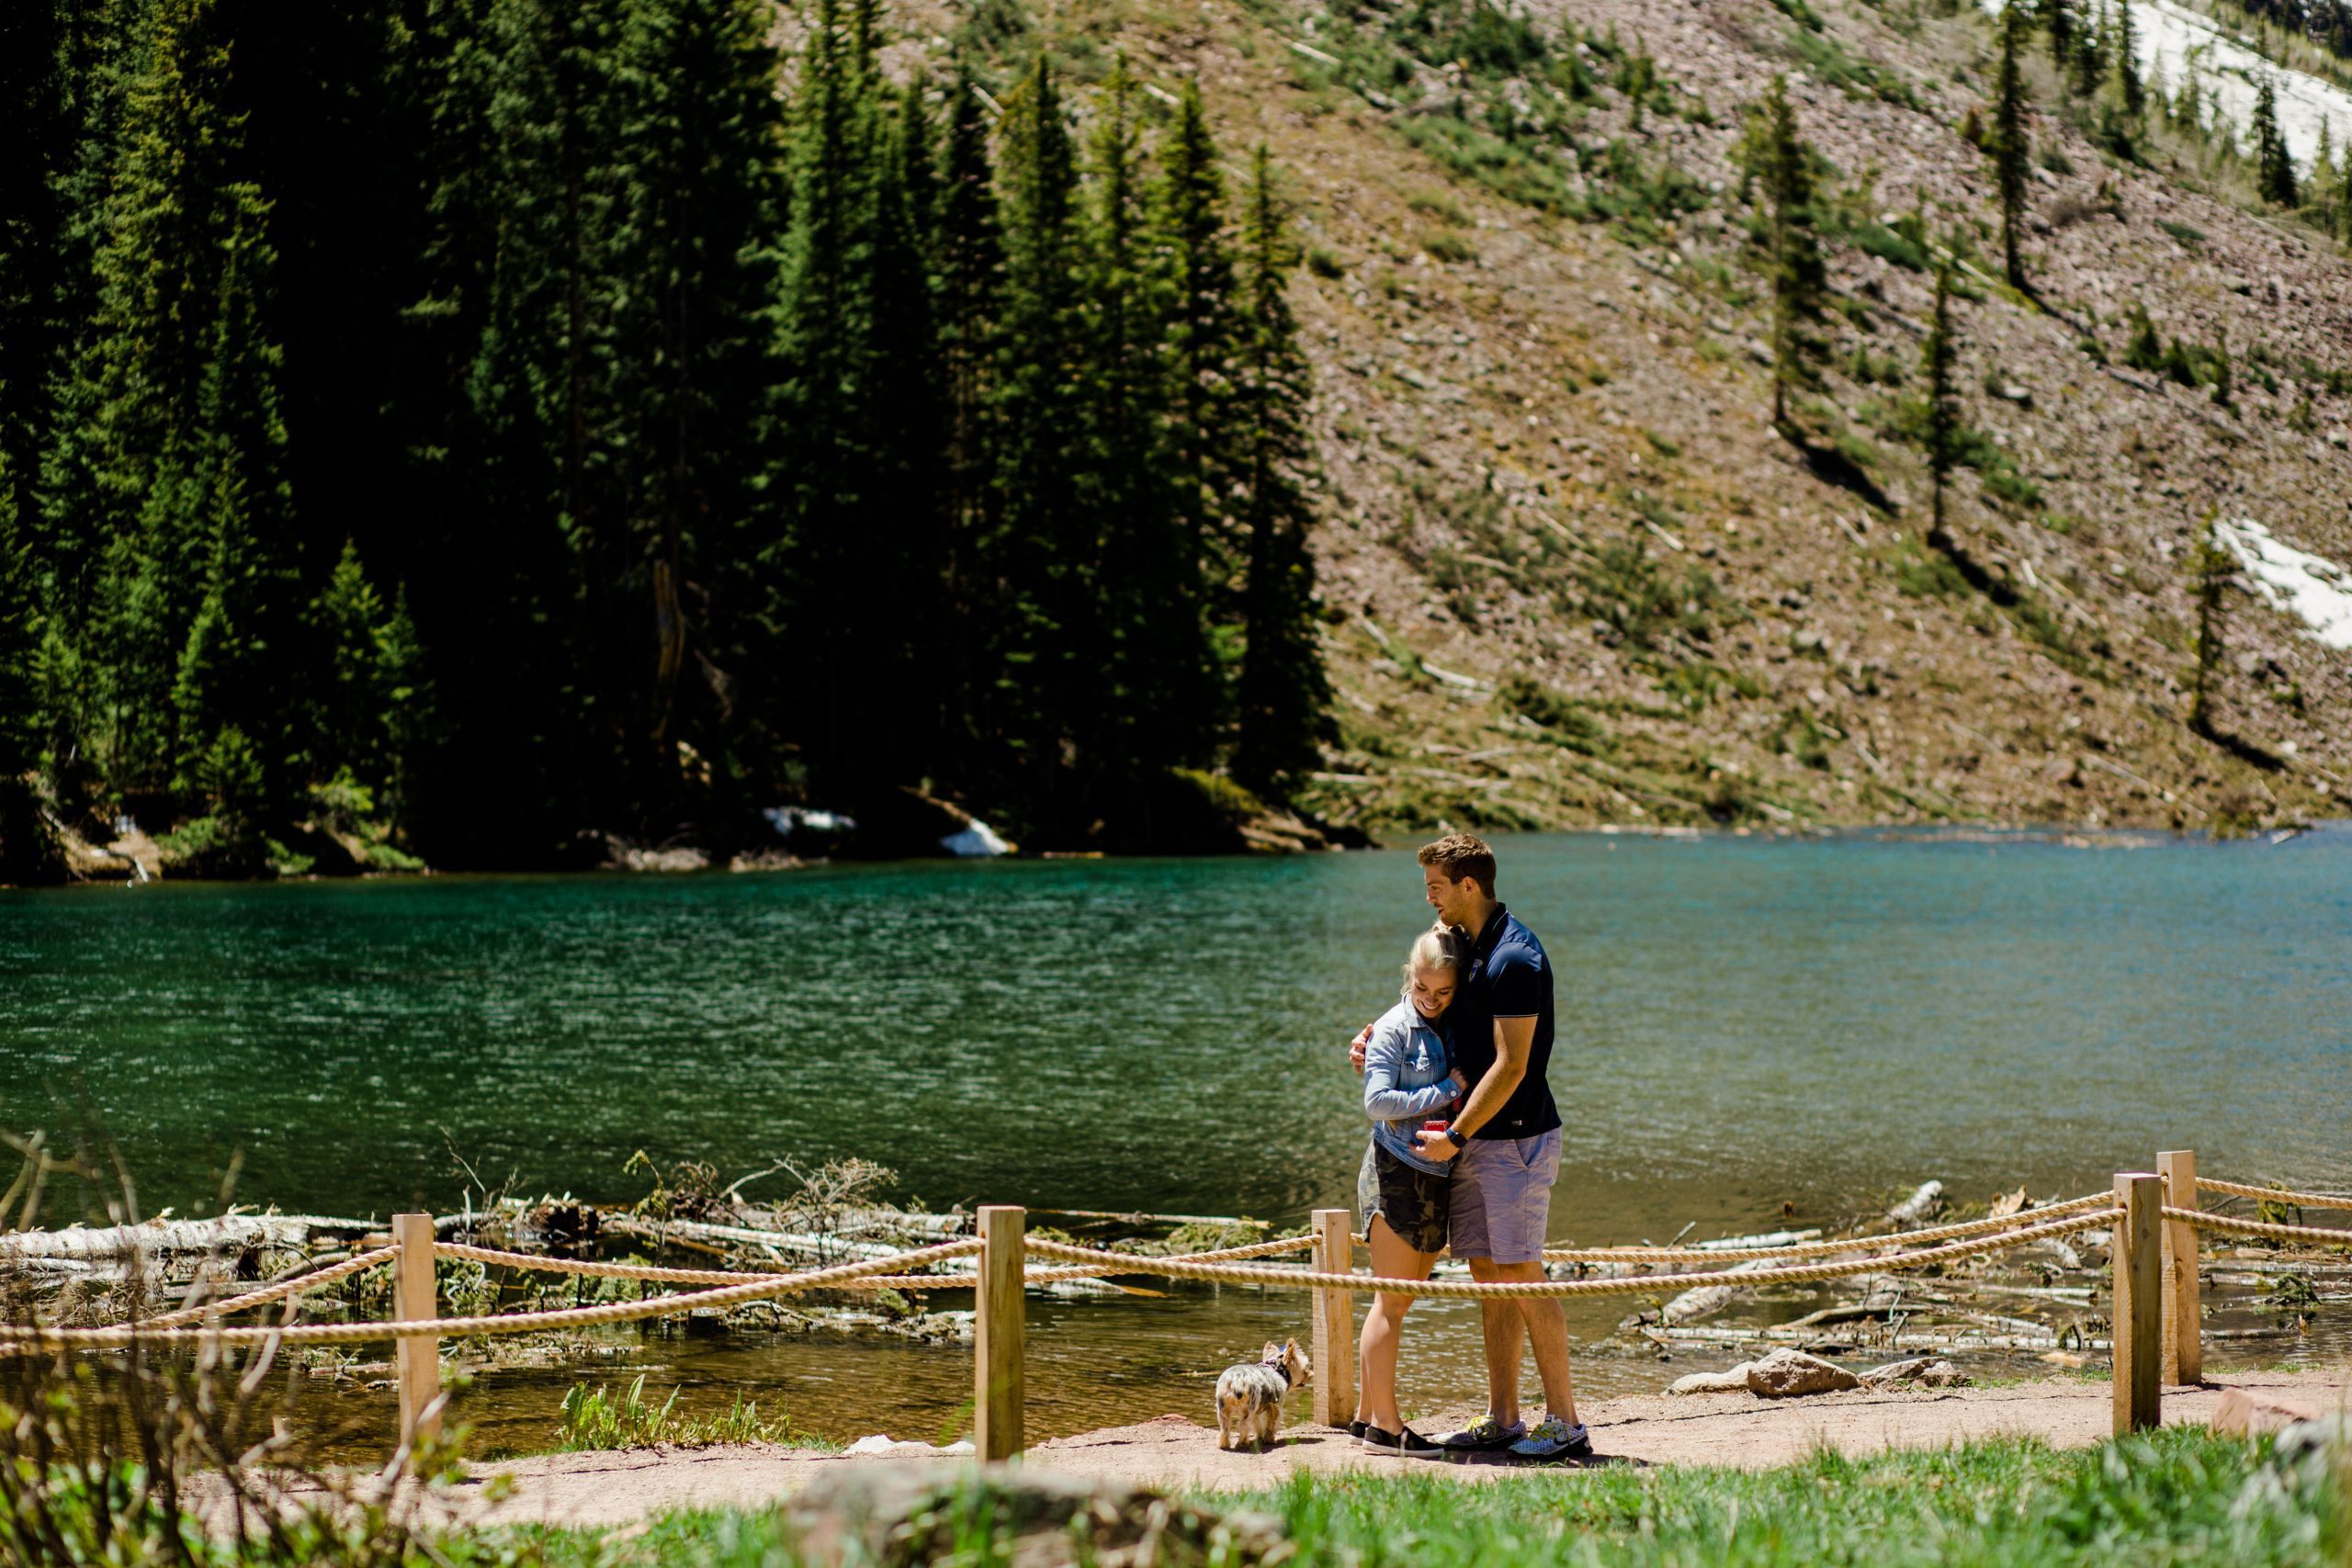 Colorado Proposal Photographer